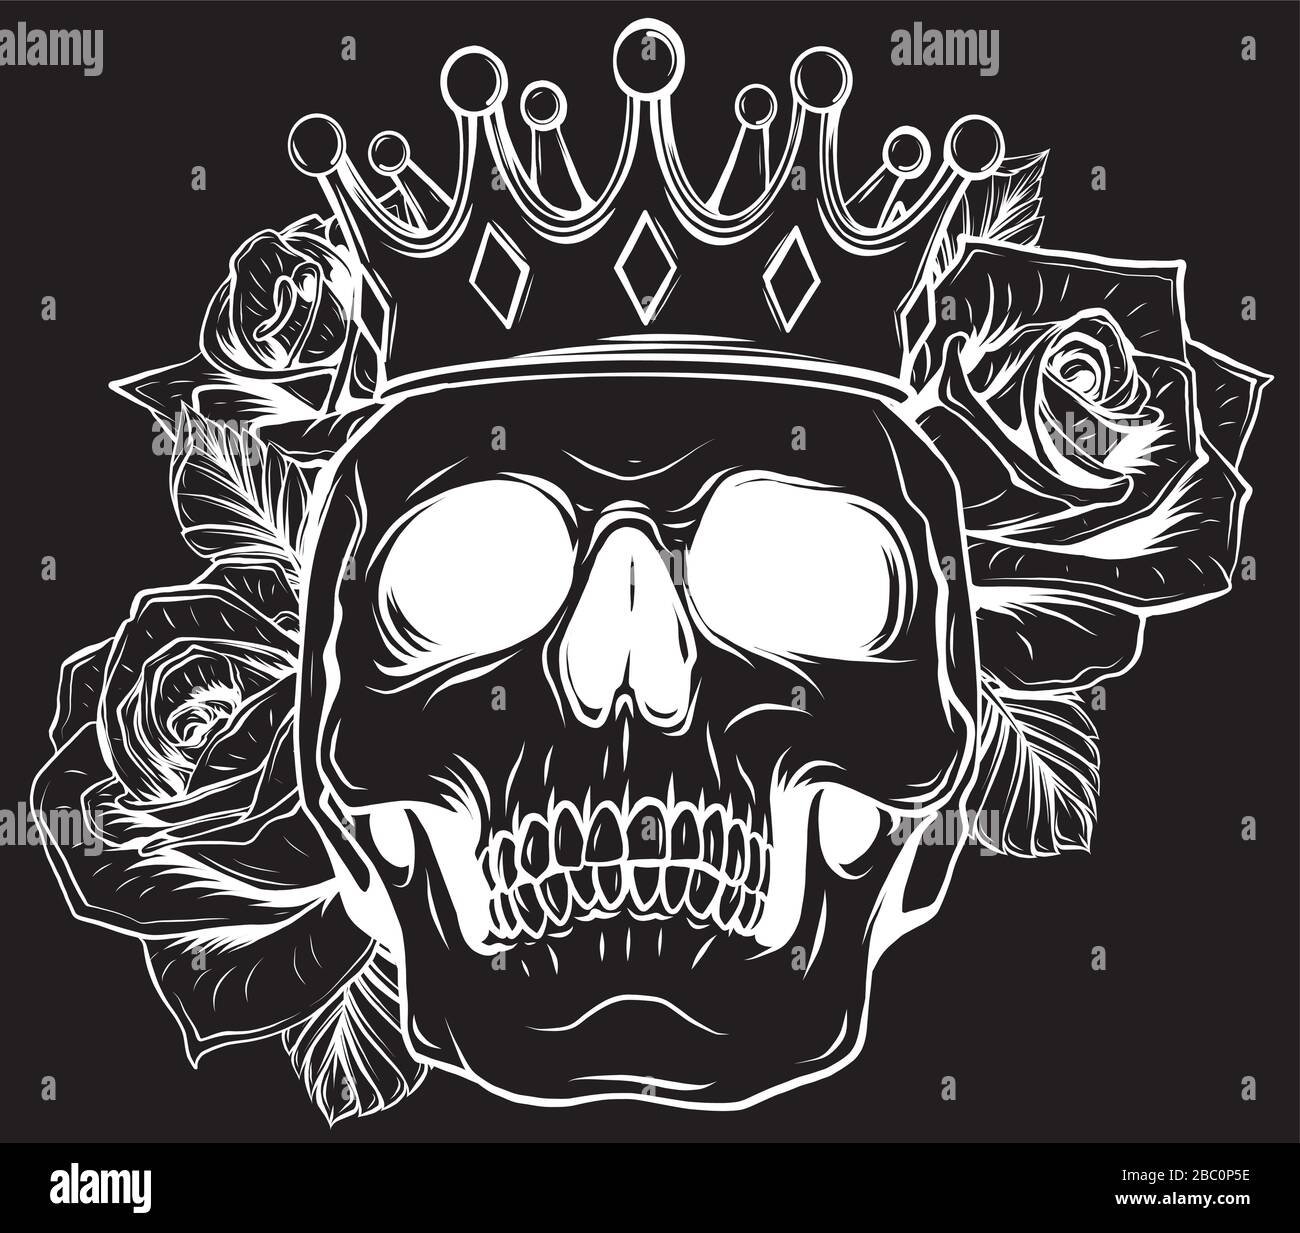 Vektor-Illustration Totenkopfes in Krone mit Rosen im schwarzen Hintergrund Stock Vektor